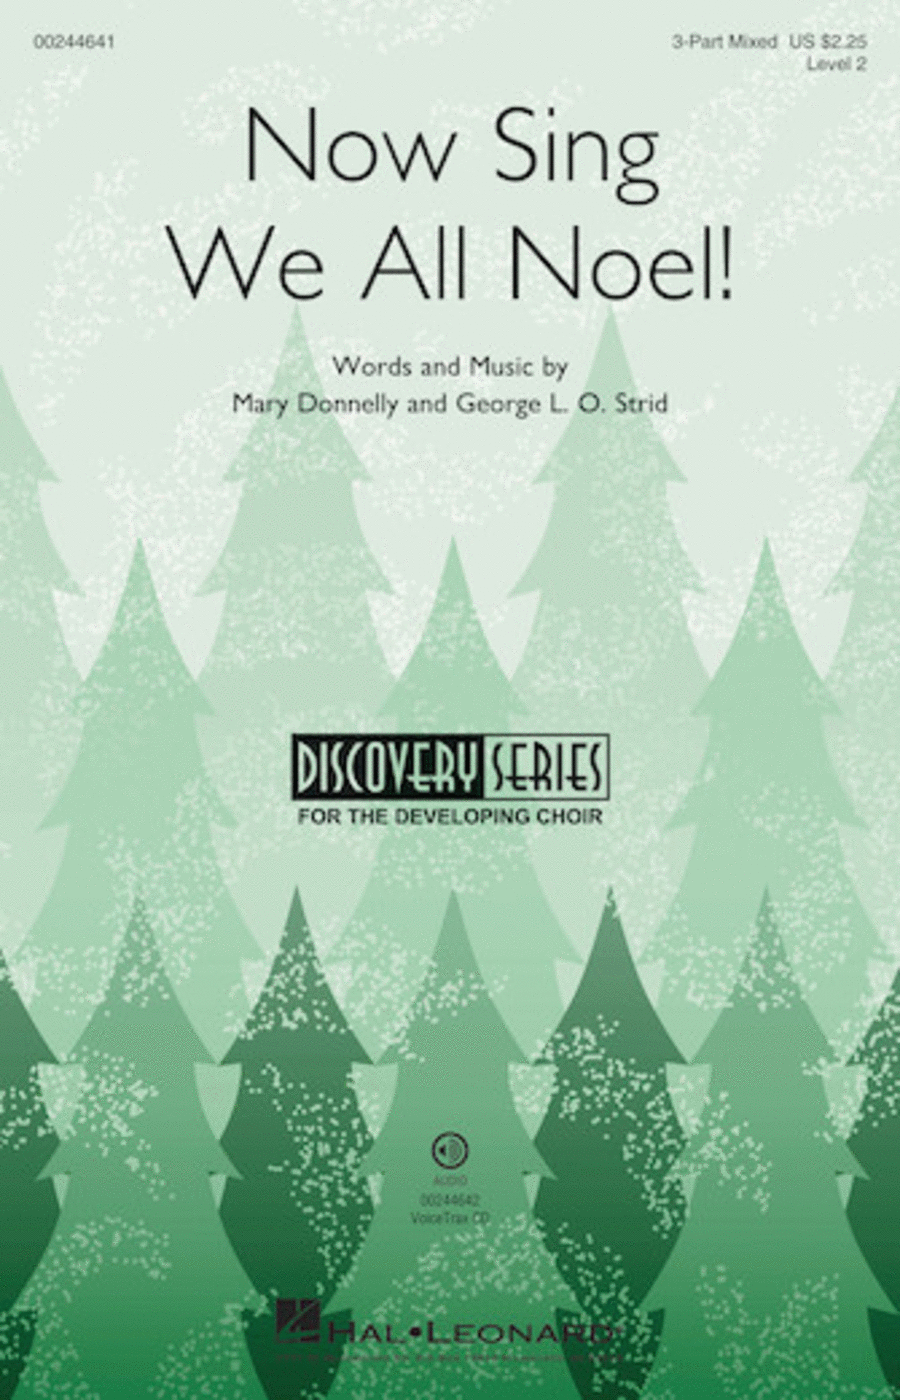 Now Sing We All Noel!